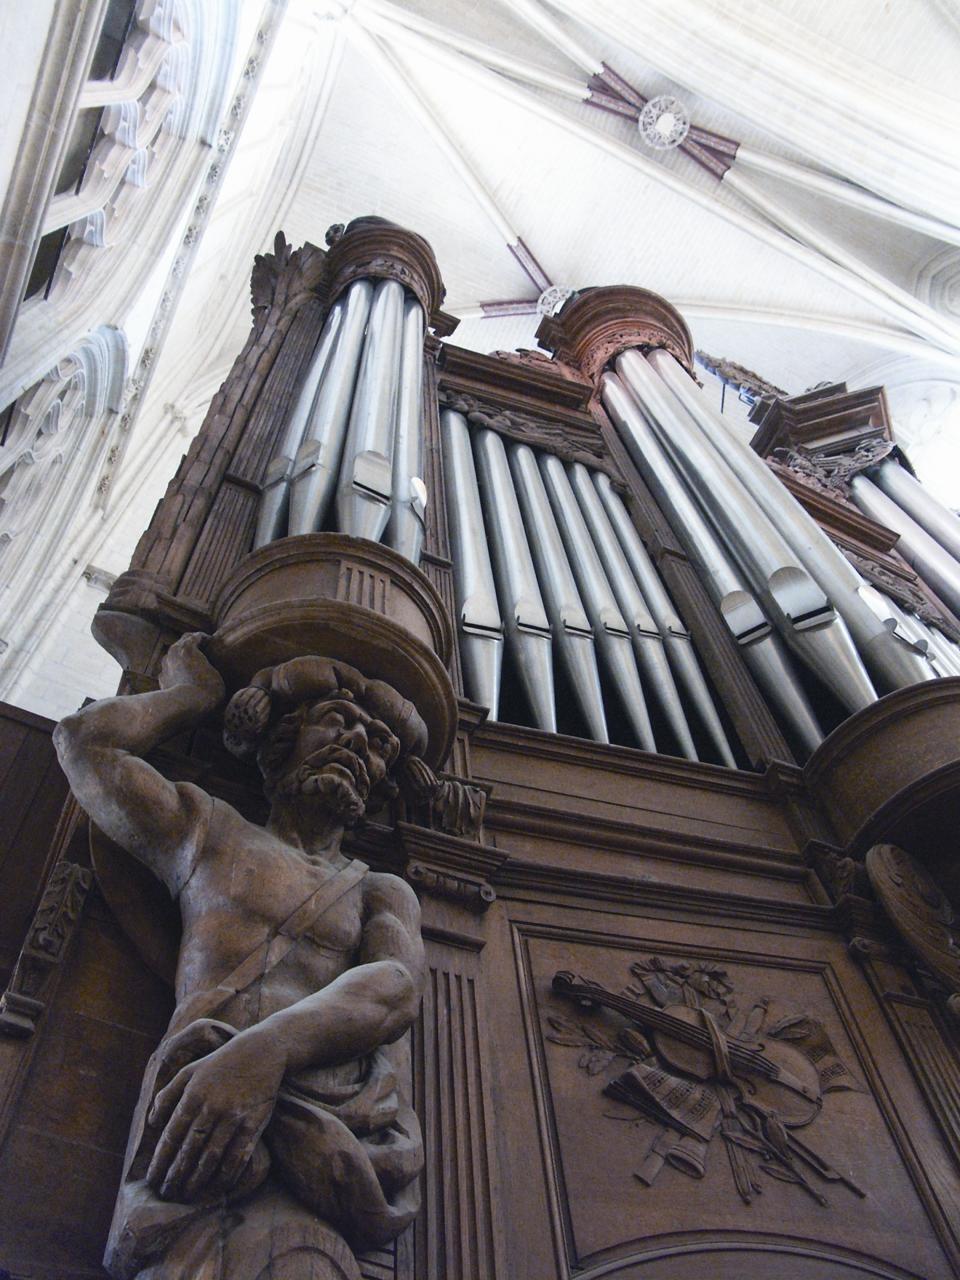 Nantes. Cathédrale : le grand orgue, disparition d'un survivant - Nantes .maville.com